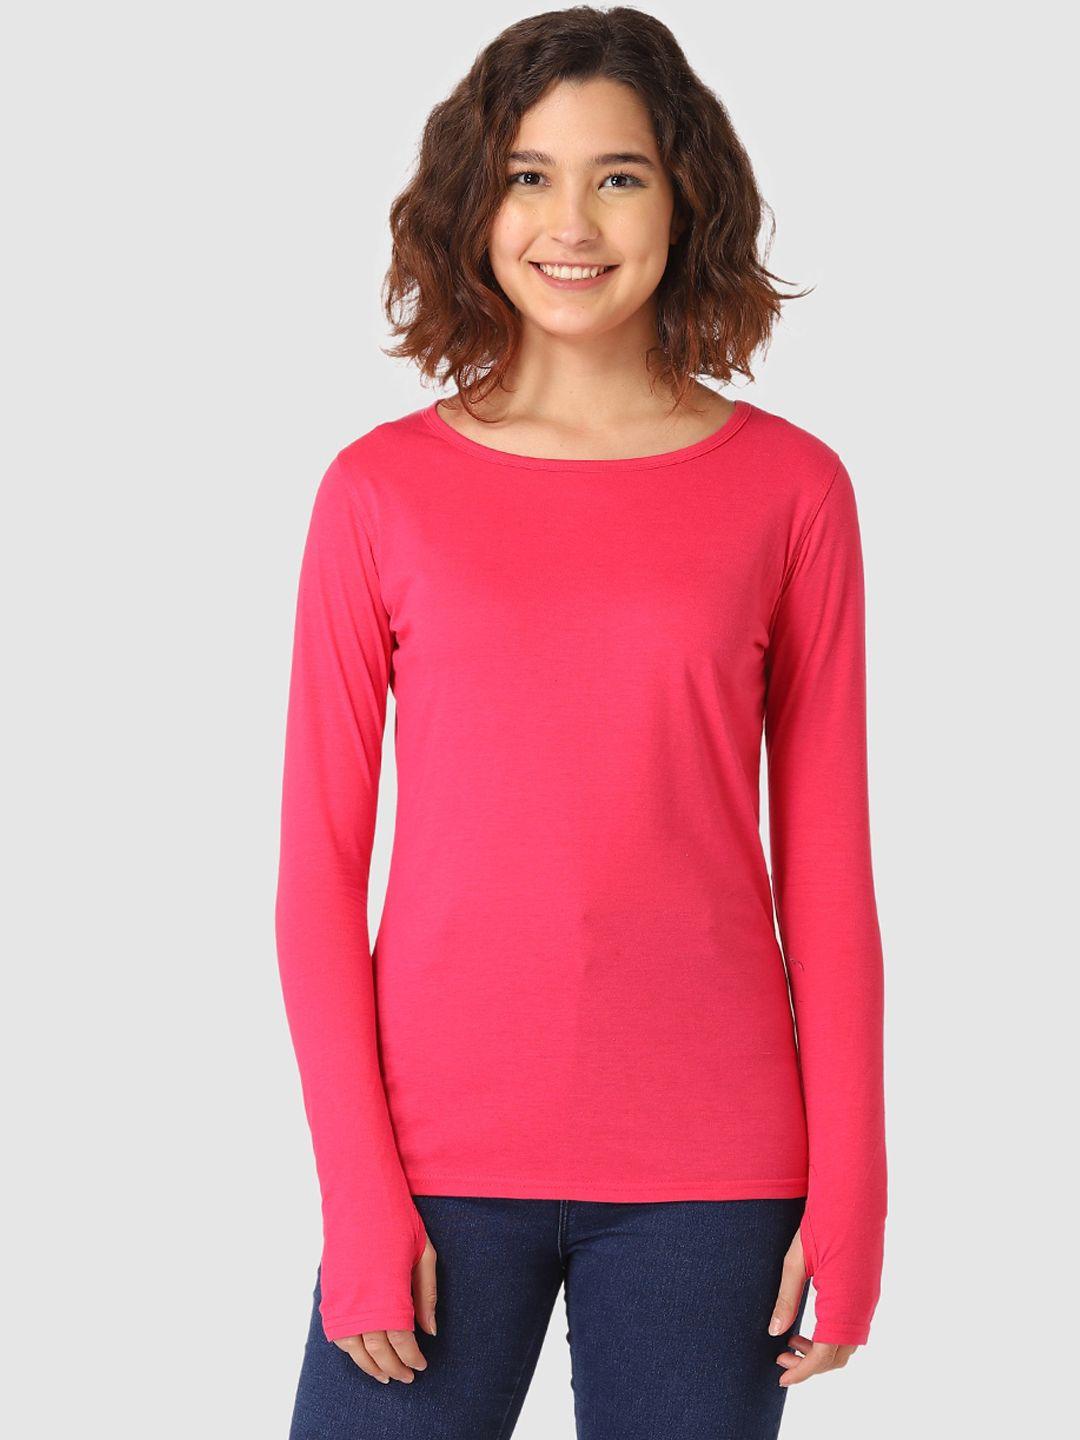 vemante women fuchsia pink solid round neck t-shirt